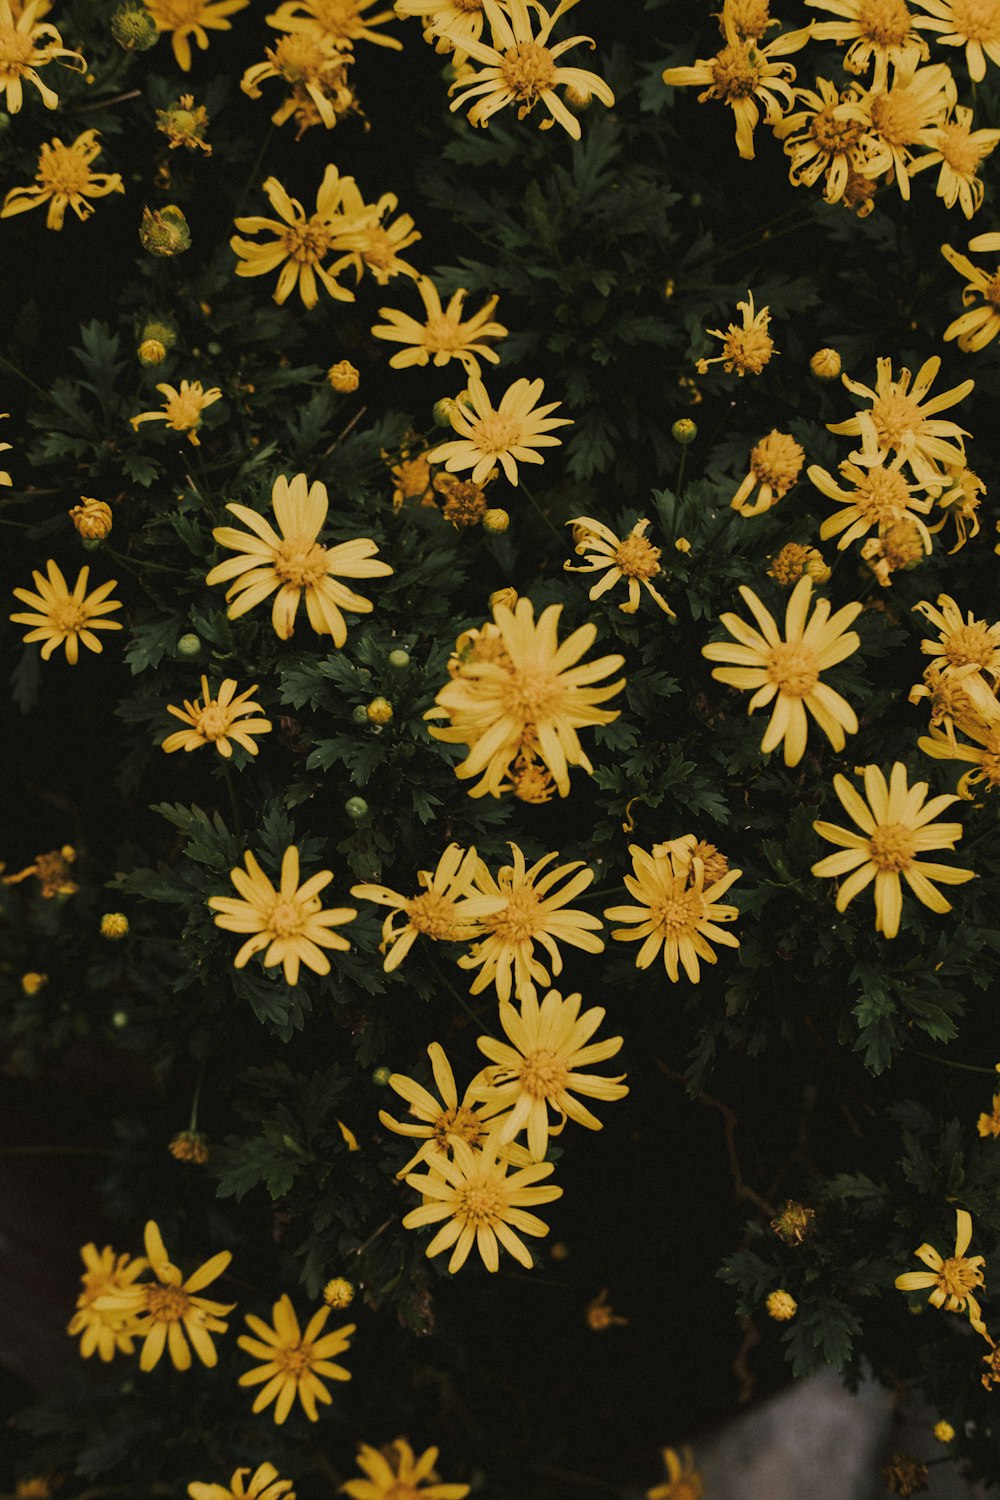 flores amarillas con hojas verdes